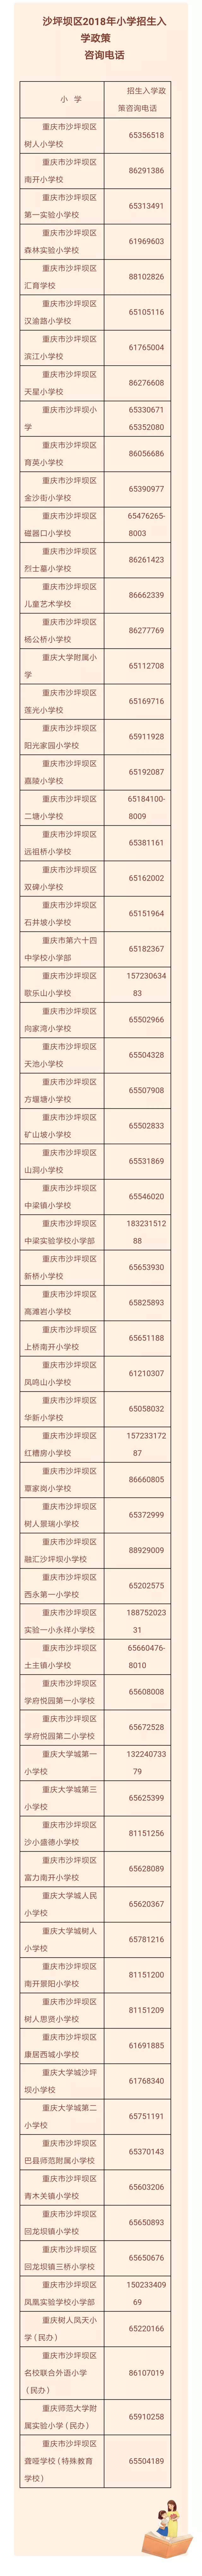 重庆沙坪坝区67所公立小学咨询电话